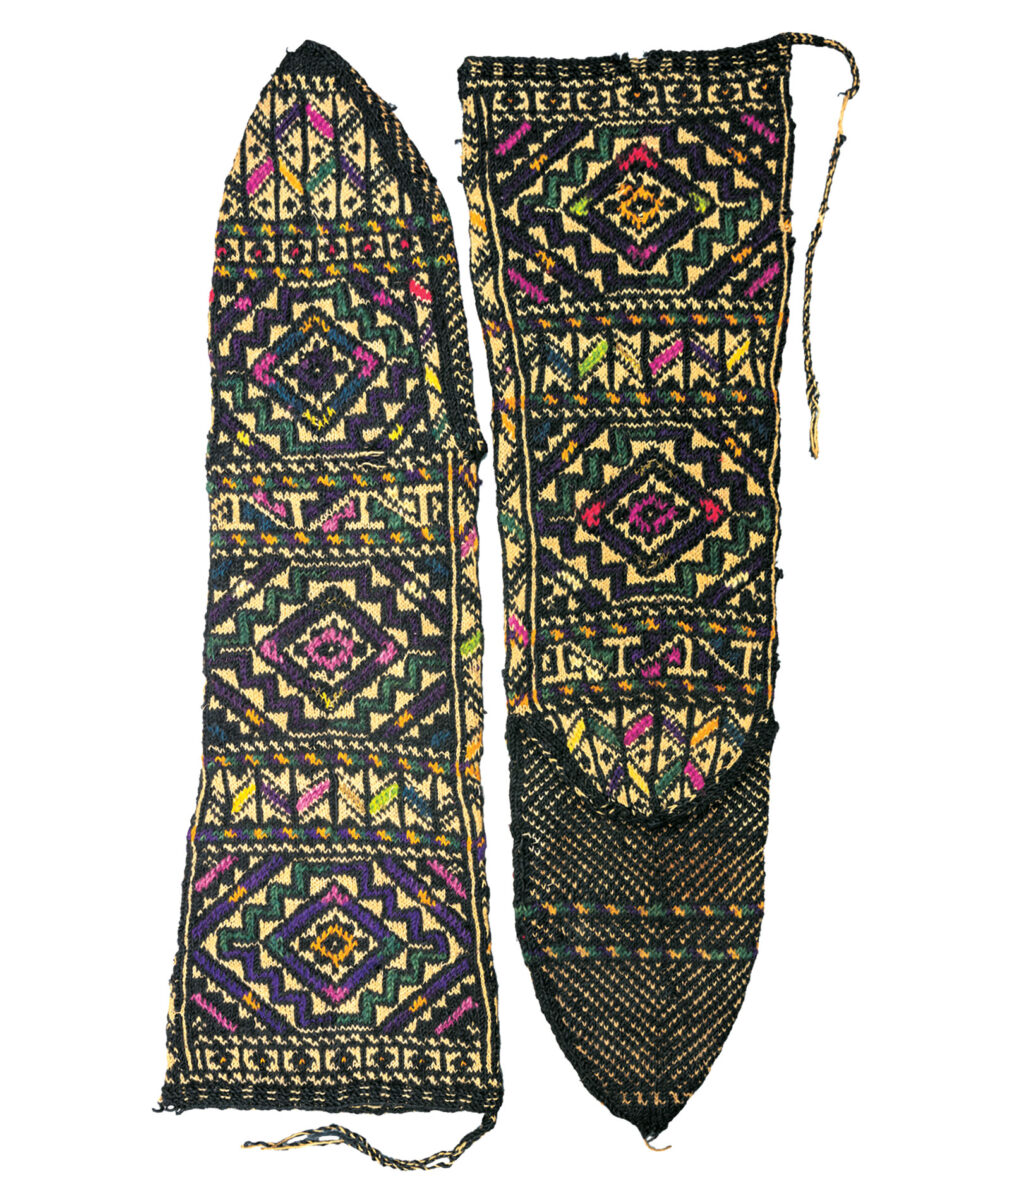 Μάλλινες πλεκτές κάλτσες με γεωμετρικά θέματα. Αρβανιτόβλαχοι Ηπείρου, αρχές 20ού αι. Μουσείο Μπενάκη.